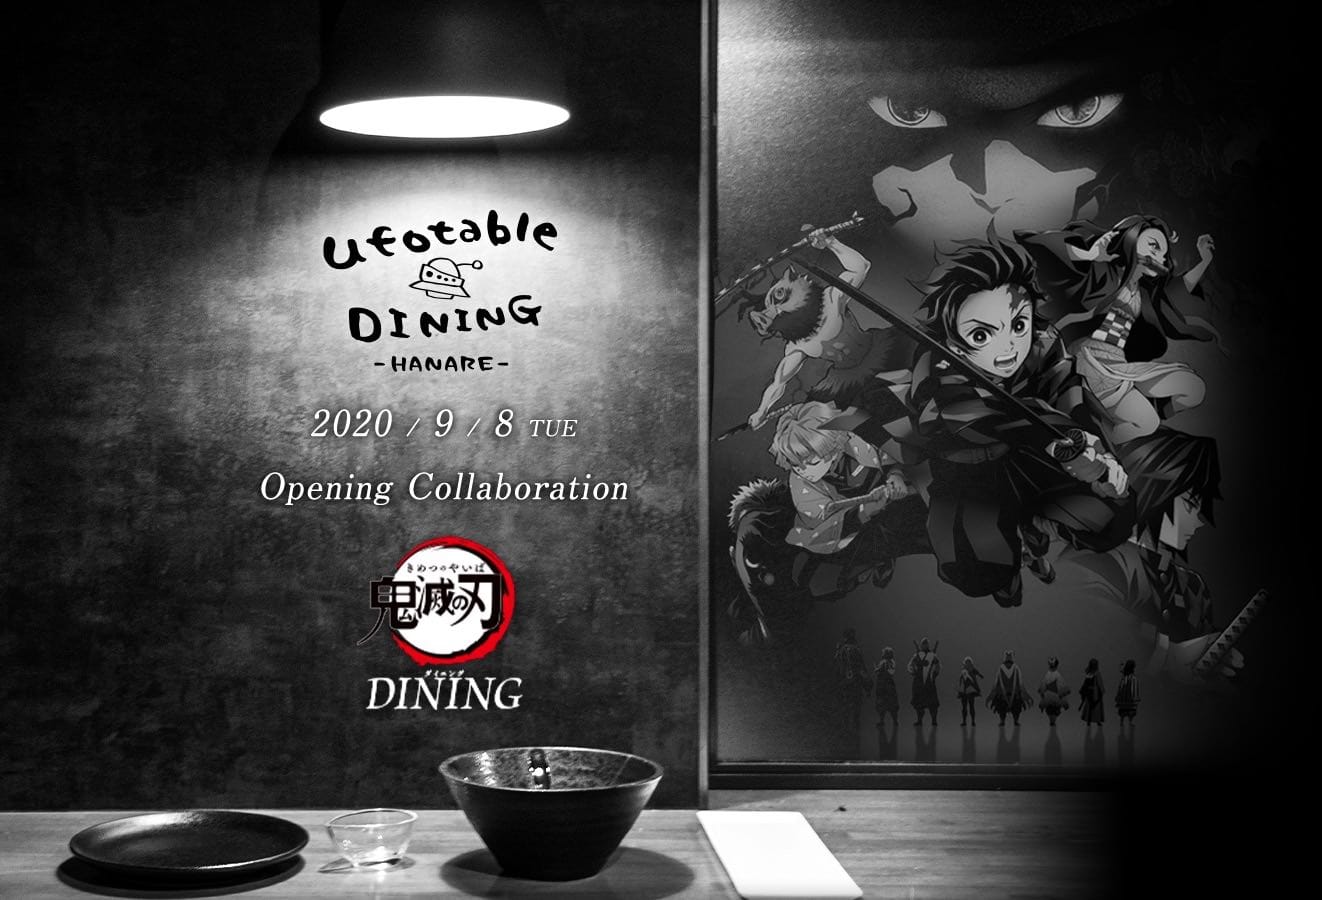 鬼滅の刃ダイニング in ufotable DINING HANARE 9月8日よりコラボ開催!!